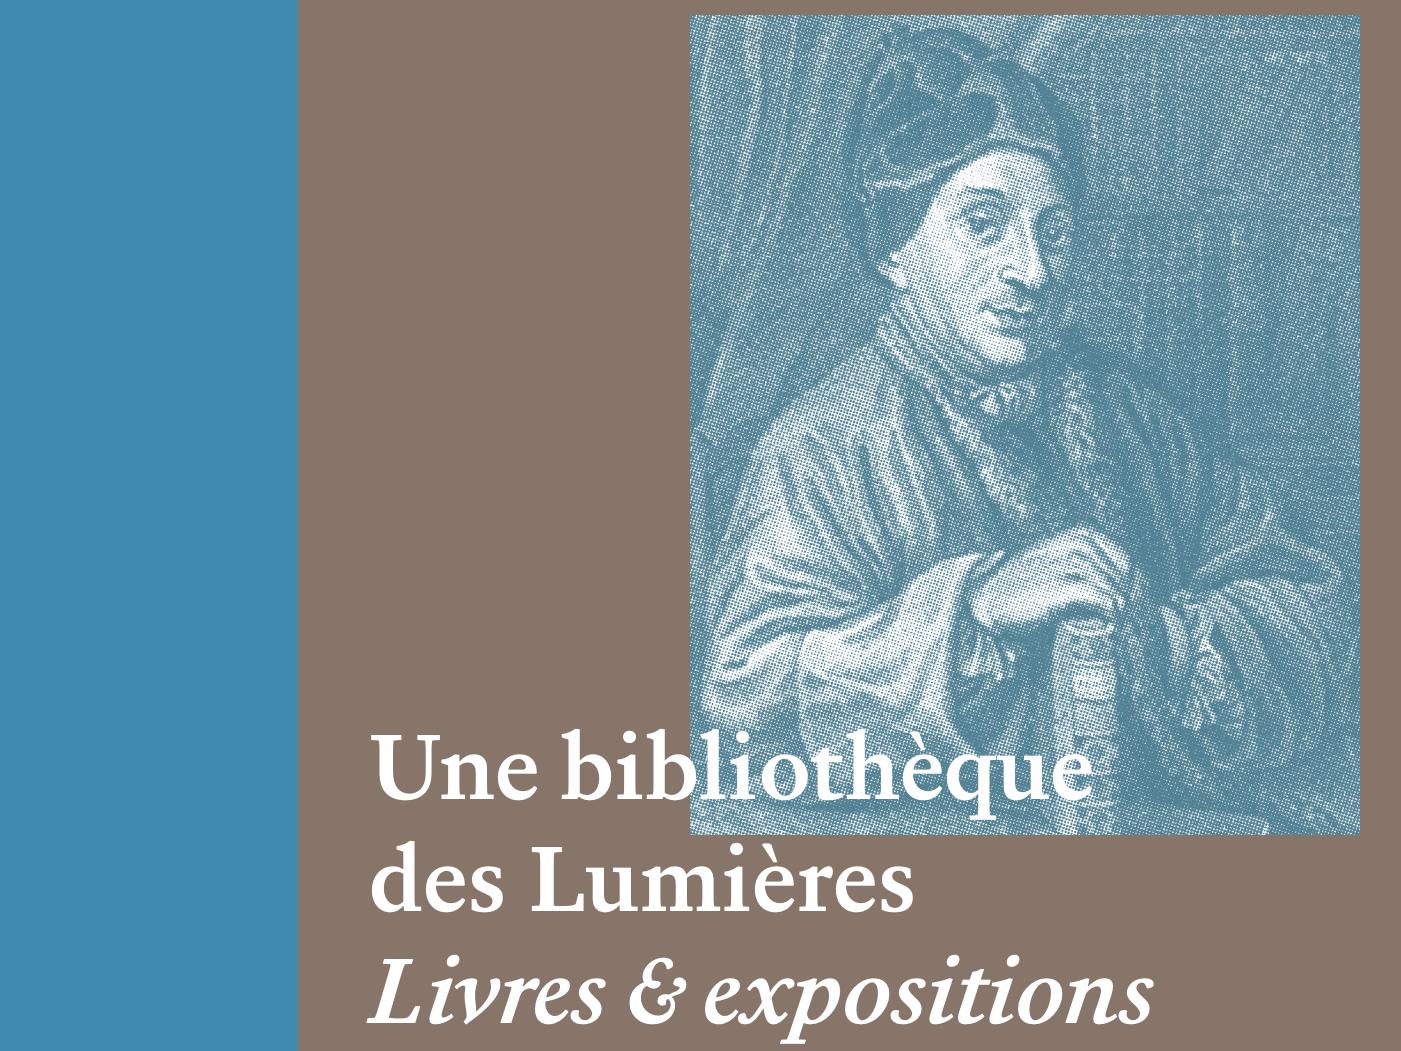 La bibliothèque des Lumières. Cycle de conférences au Musée d'Yverdon (Suisse)